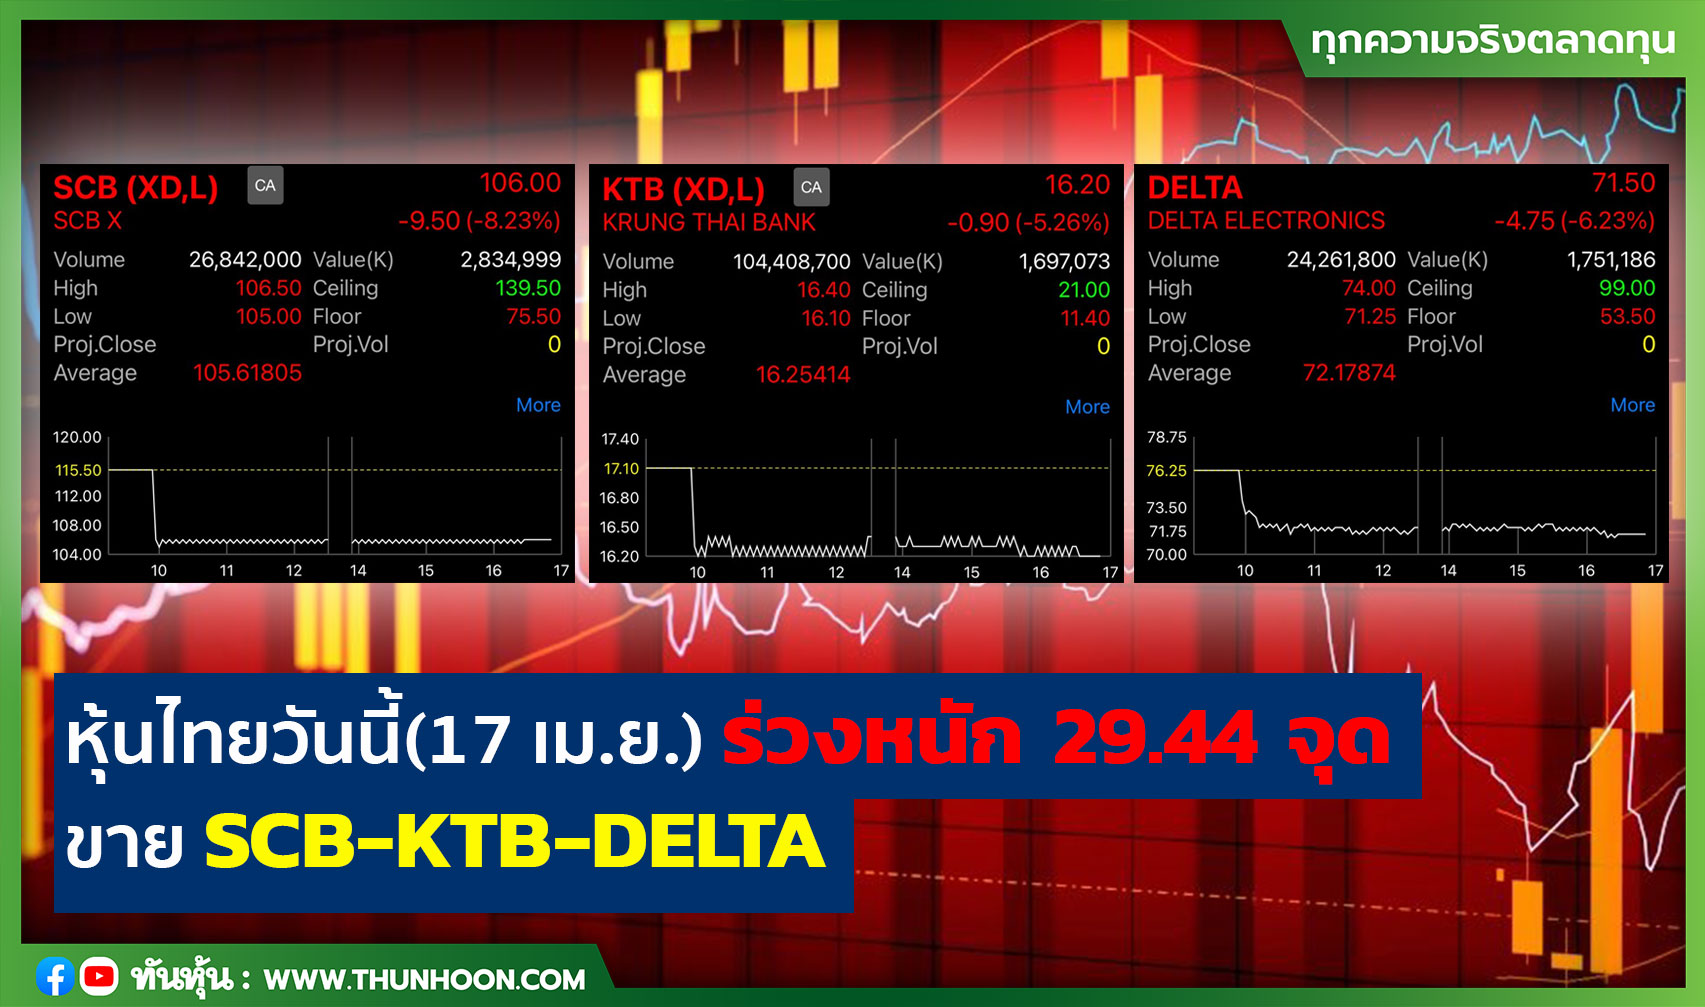 หุ้นไทยวันนี้(17 เม.ย.) ร่วงหนัก 29.44 จุด ขาย SCB-KTB-DELTA